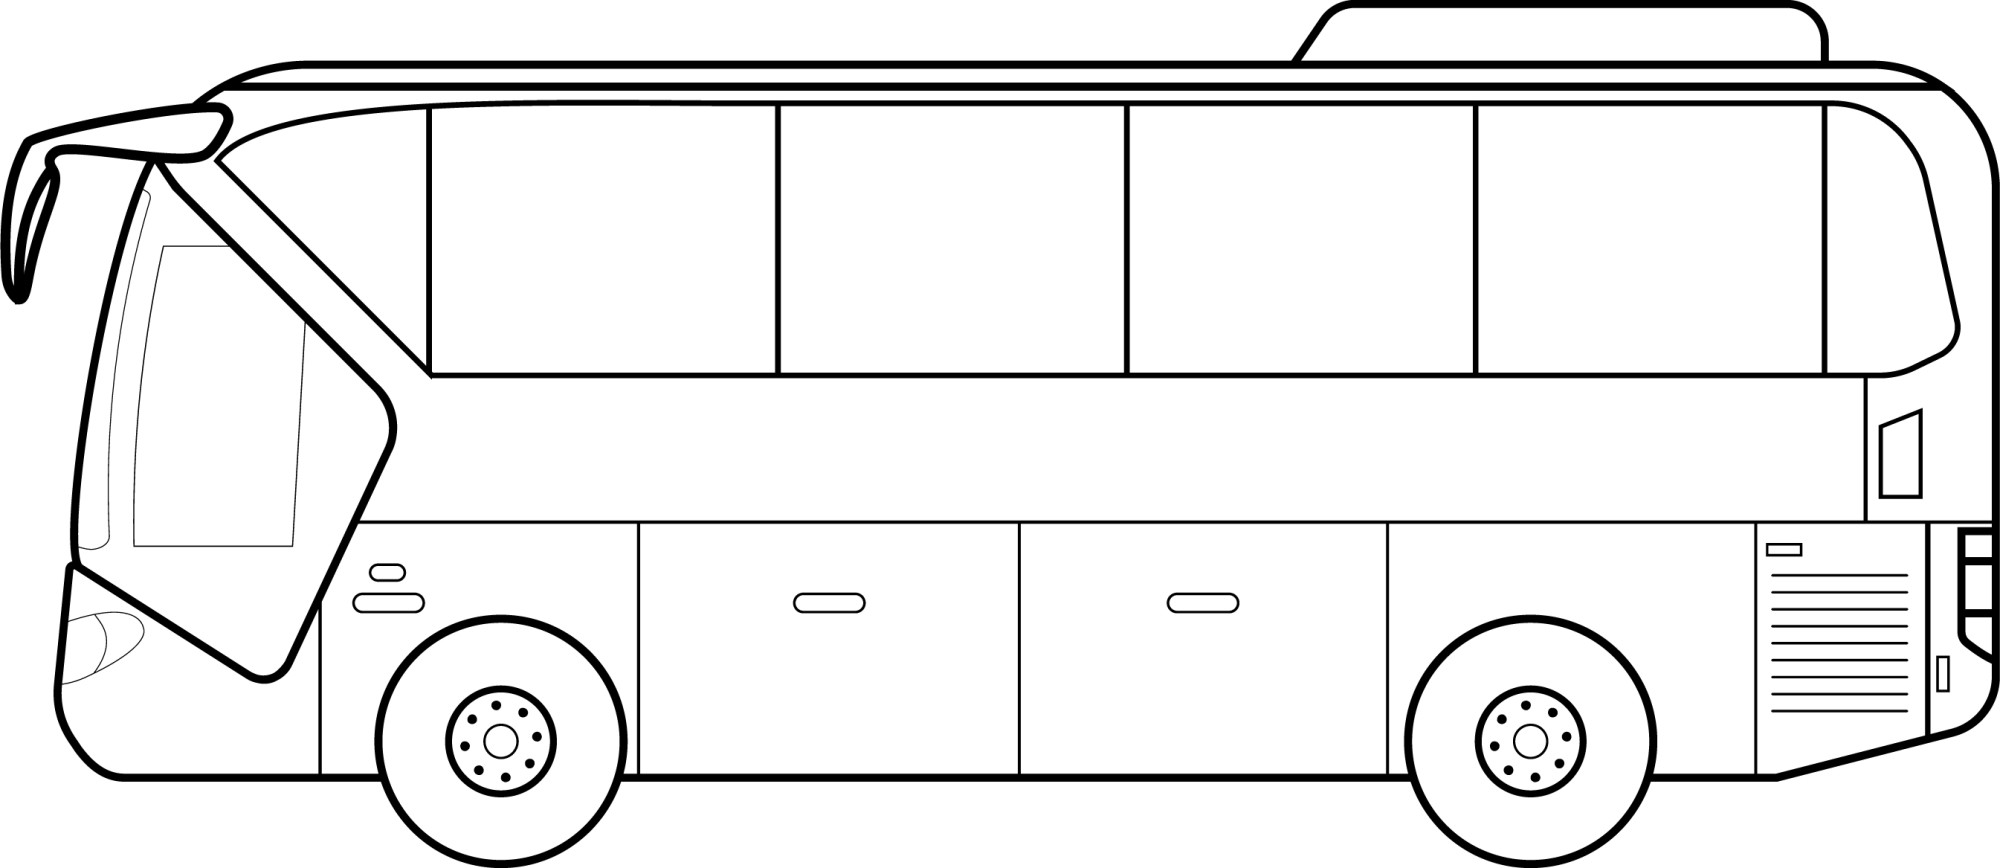 Раскраска для детей: городской пассажирский автобус вид сбоку